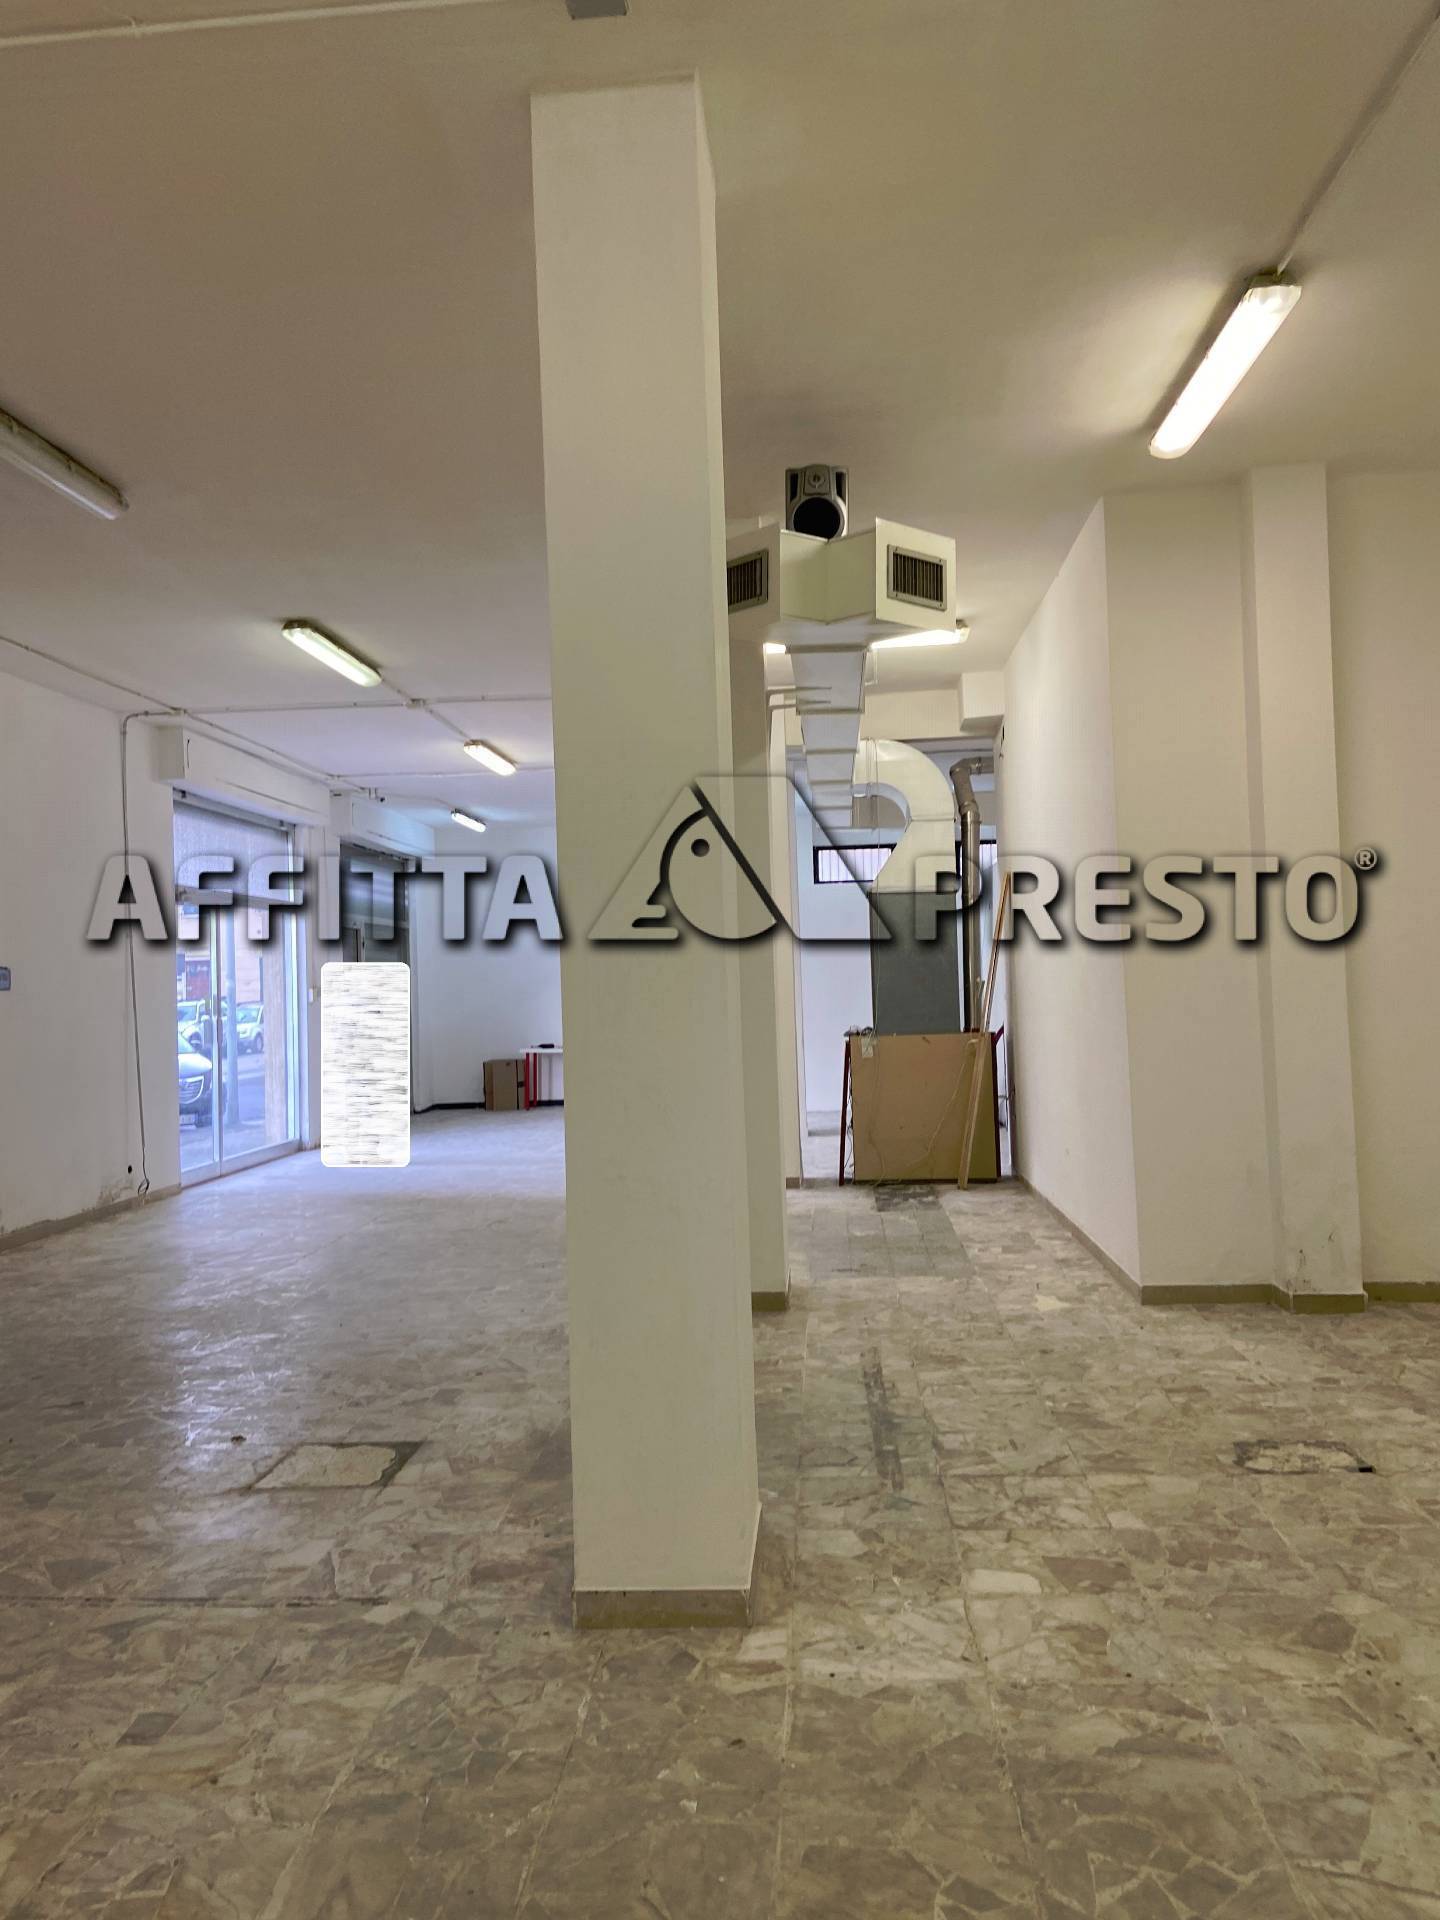 Attivit commerciale in affitto/gestione, Livorno stazione - porta a terra